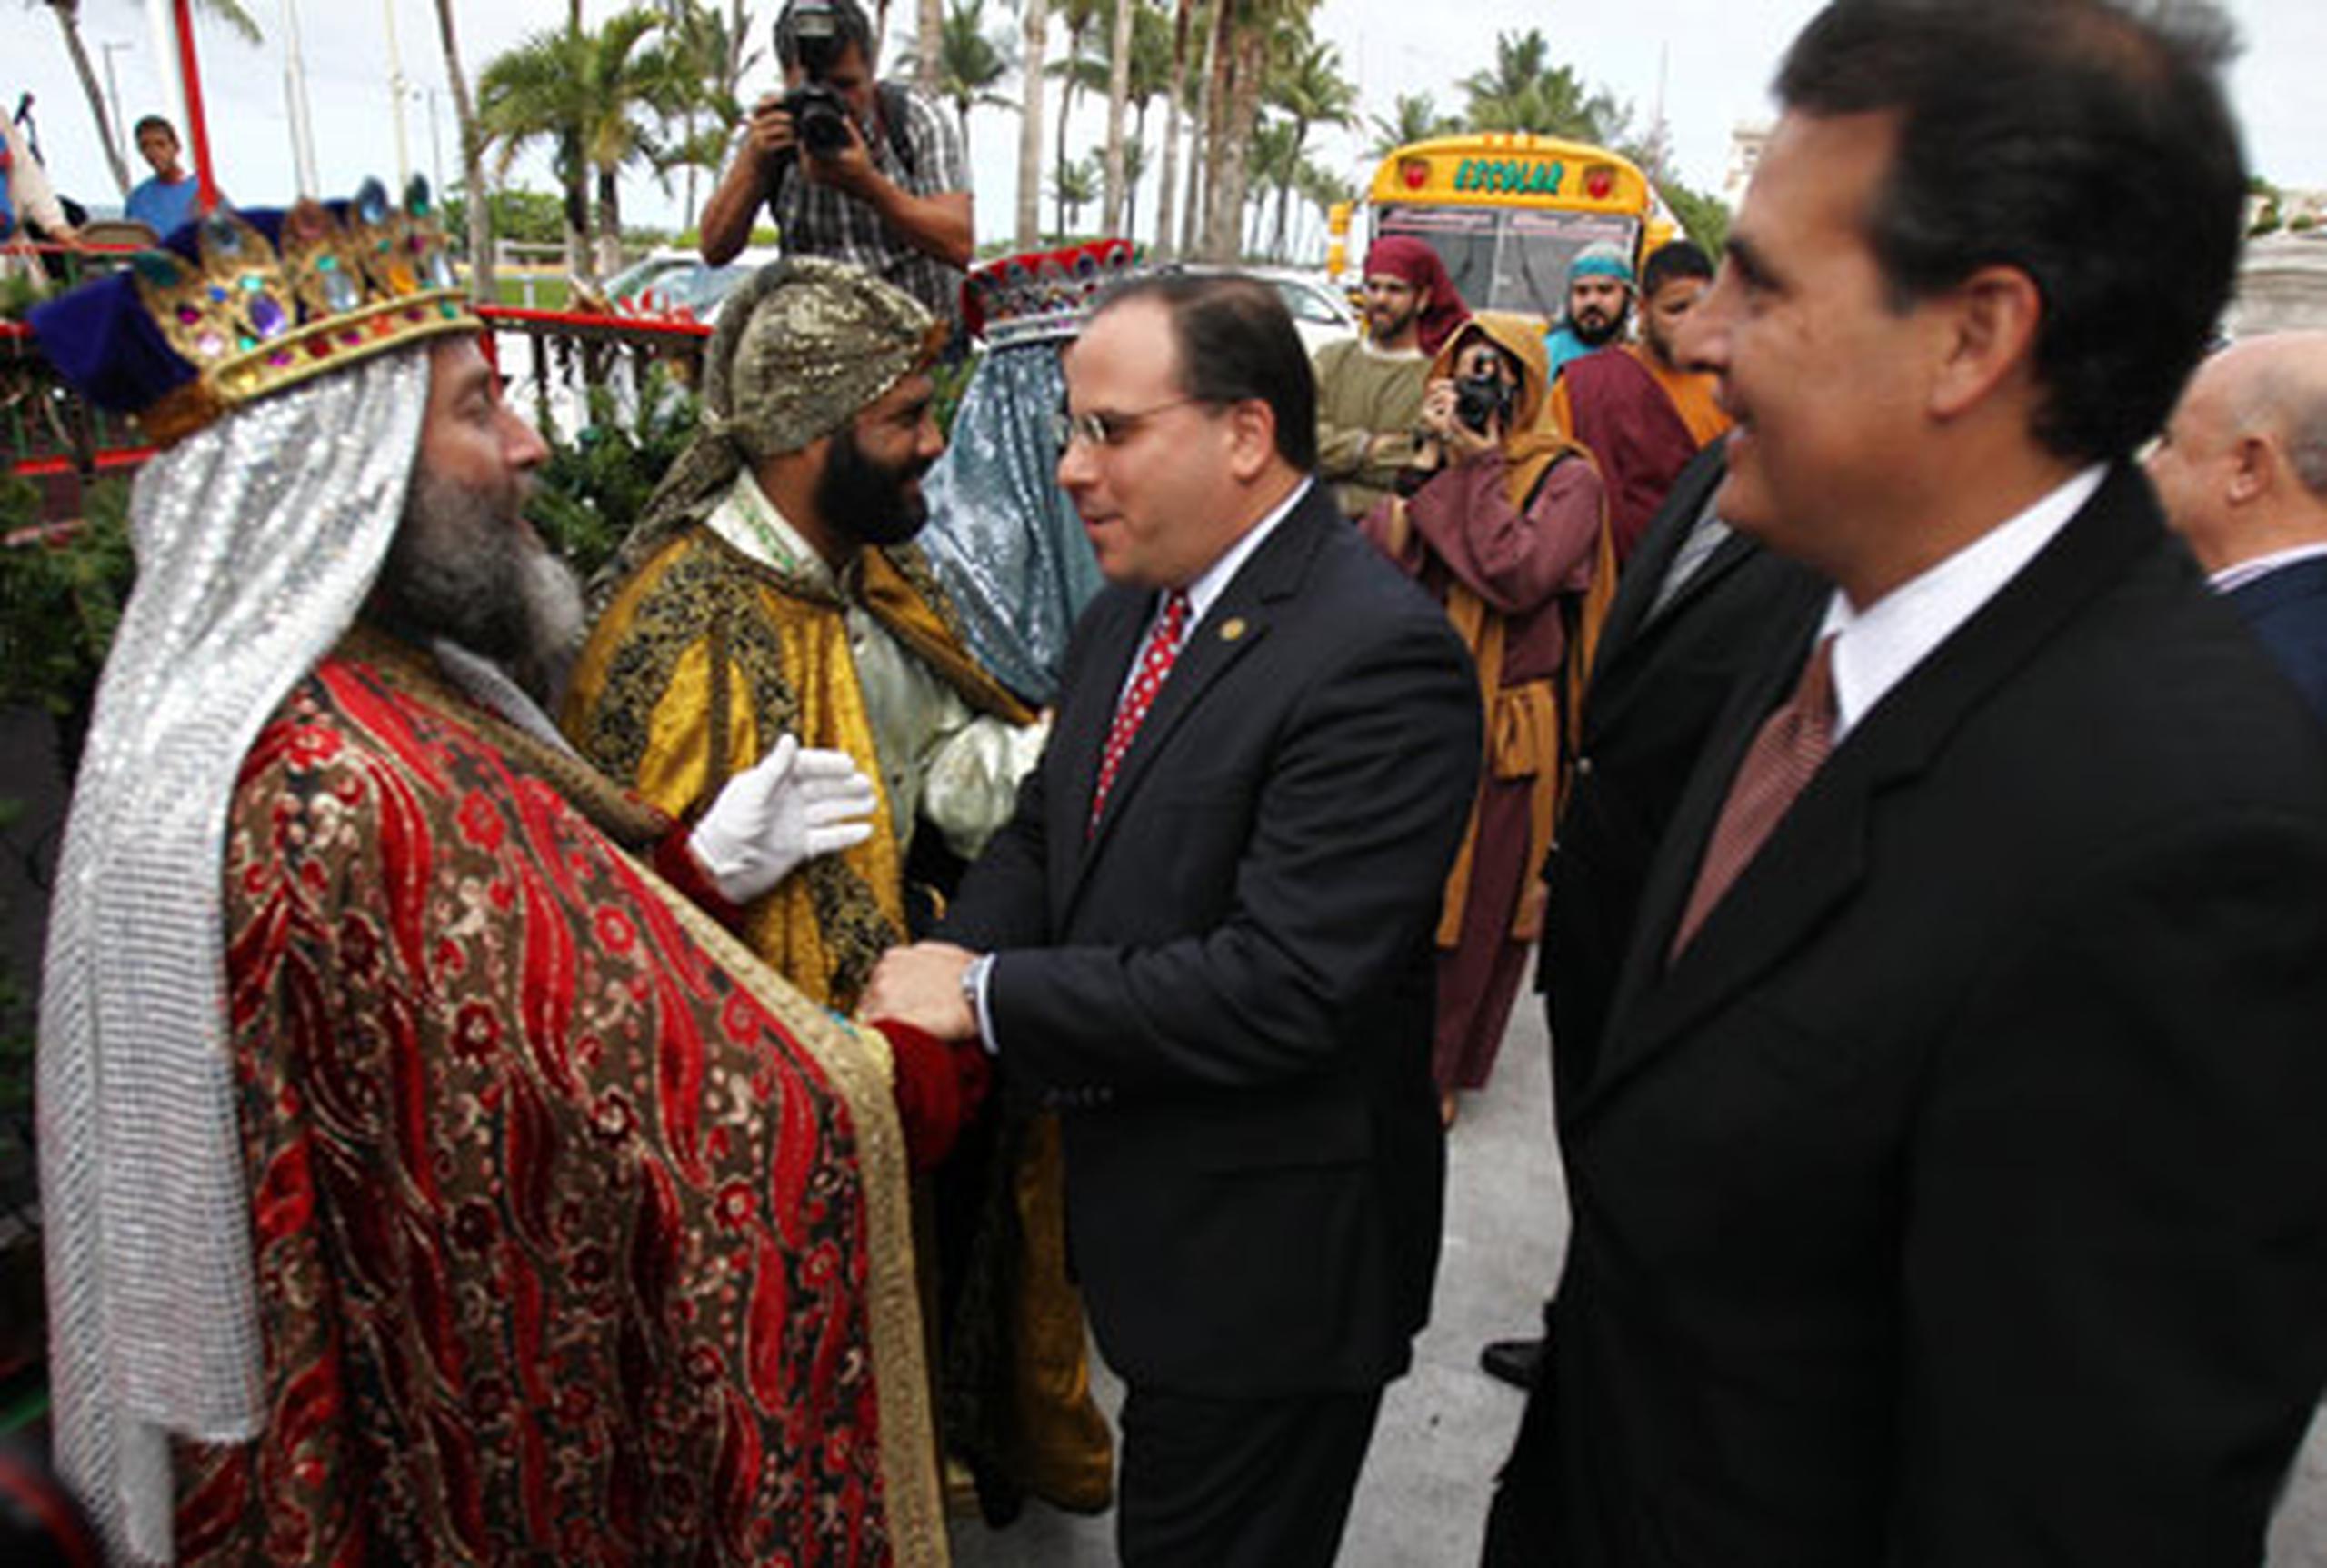 Los tres Reyes Magos de Juana Díaz visitaron esta tarde la Casa de las Leyes. (jose.candelaria@gfrmedia.com)